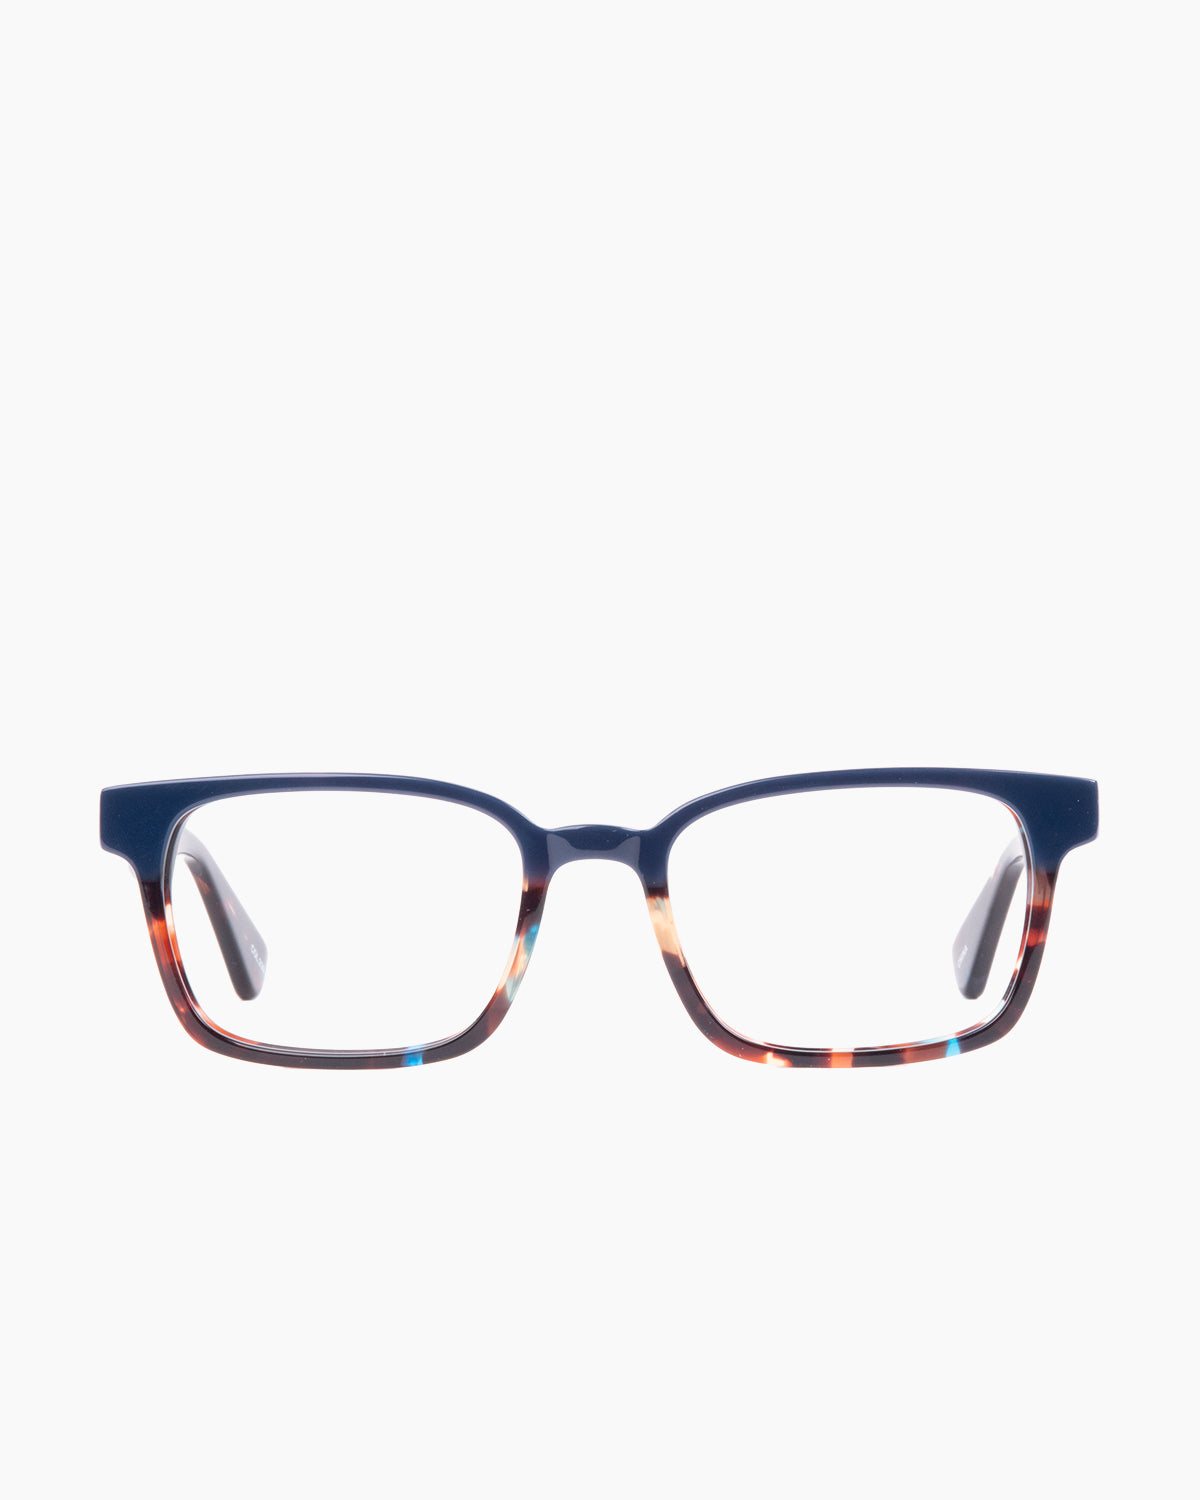 Evolve - Russel - 239 | Bar à lunettes